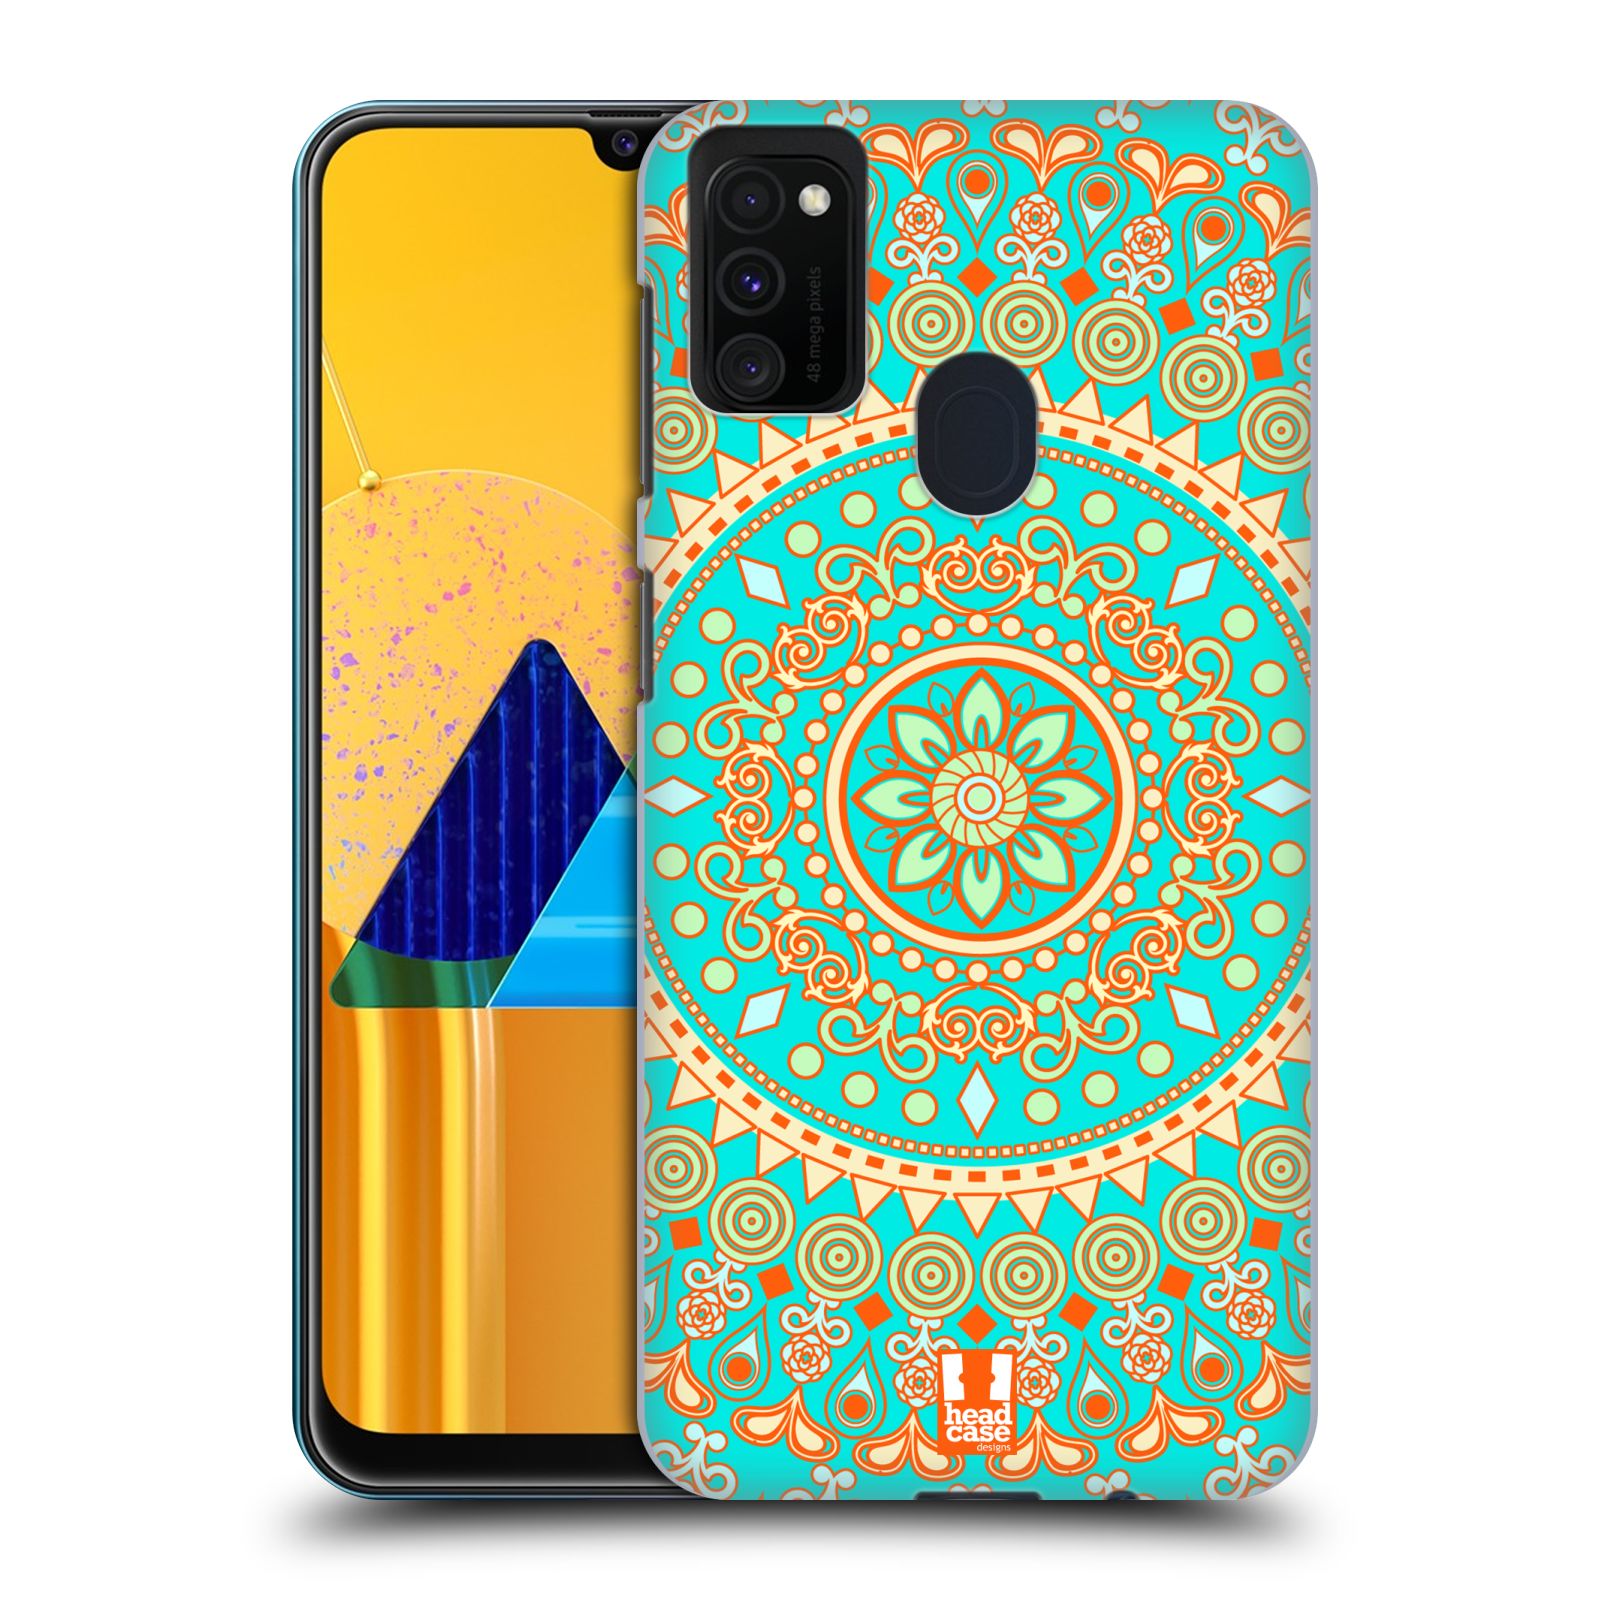 Zadní kryt na mobil Samsung Galaxy M21 vzor Indie Mandala slunce barevný motiv TYRKYSOVÁ, ZELENÁ